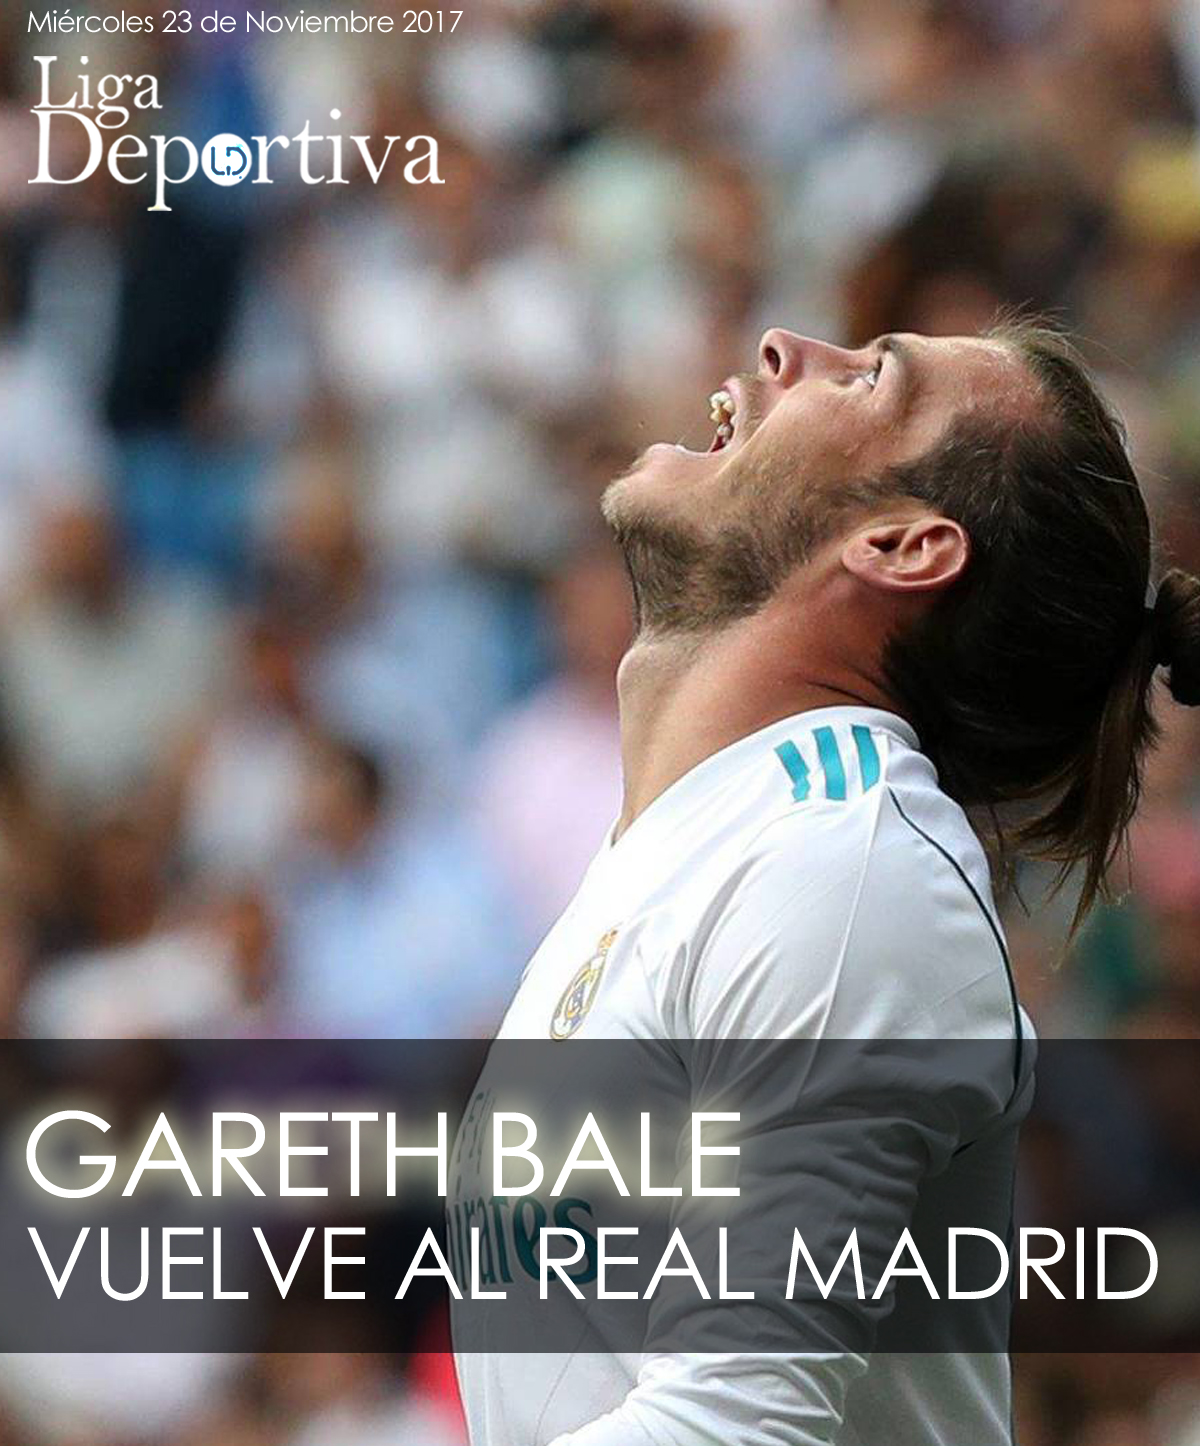 Gareth Bale vuelve antes de lo previsto al Real Madrid 